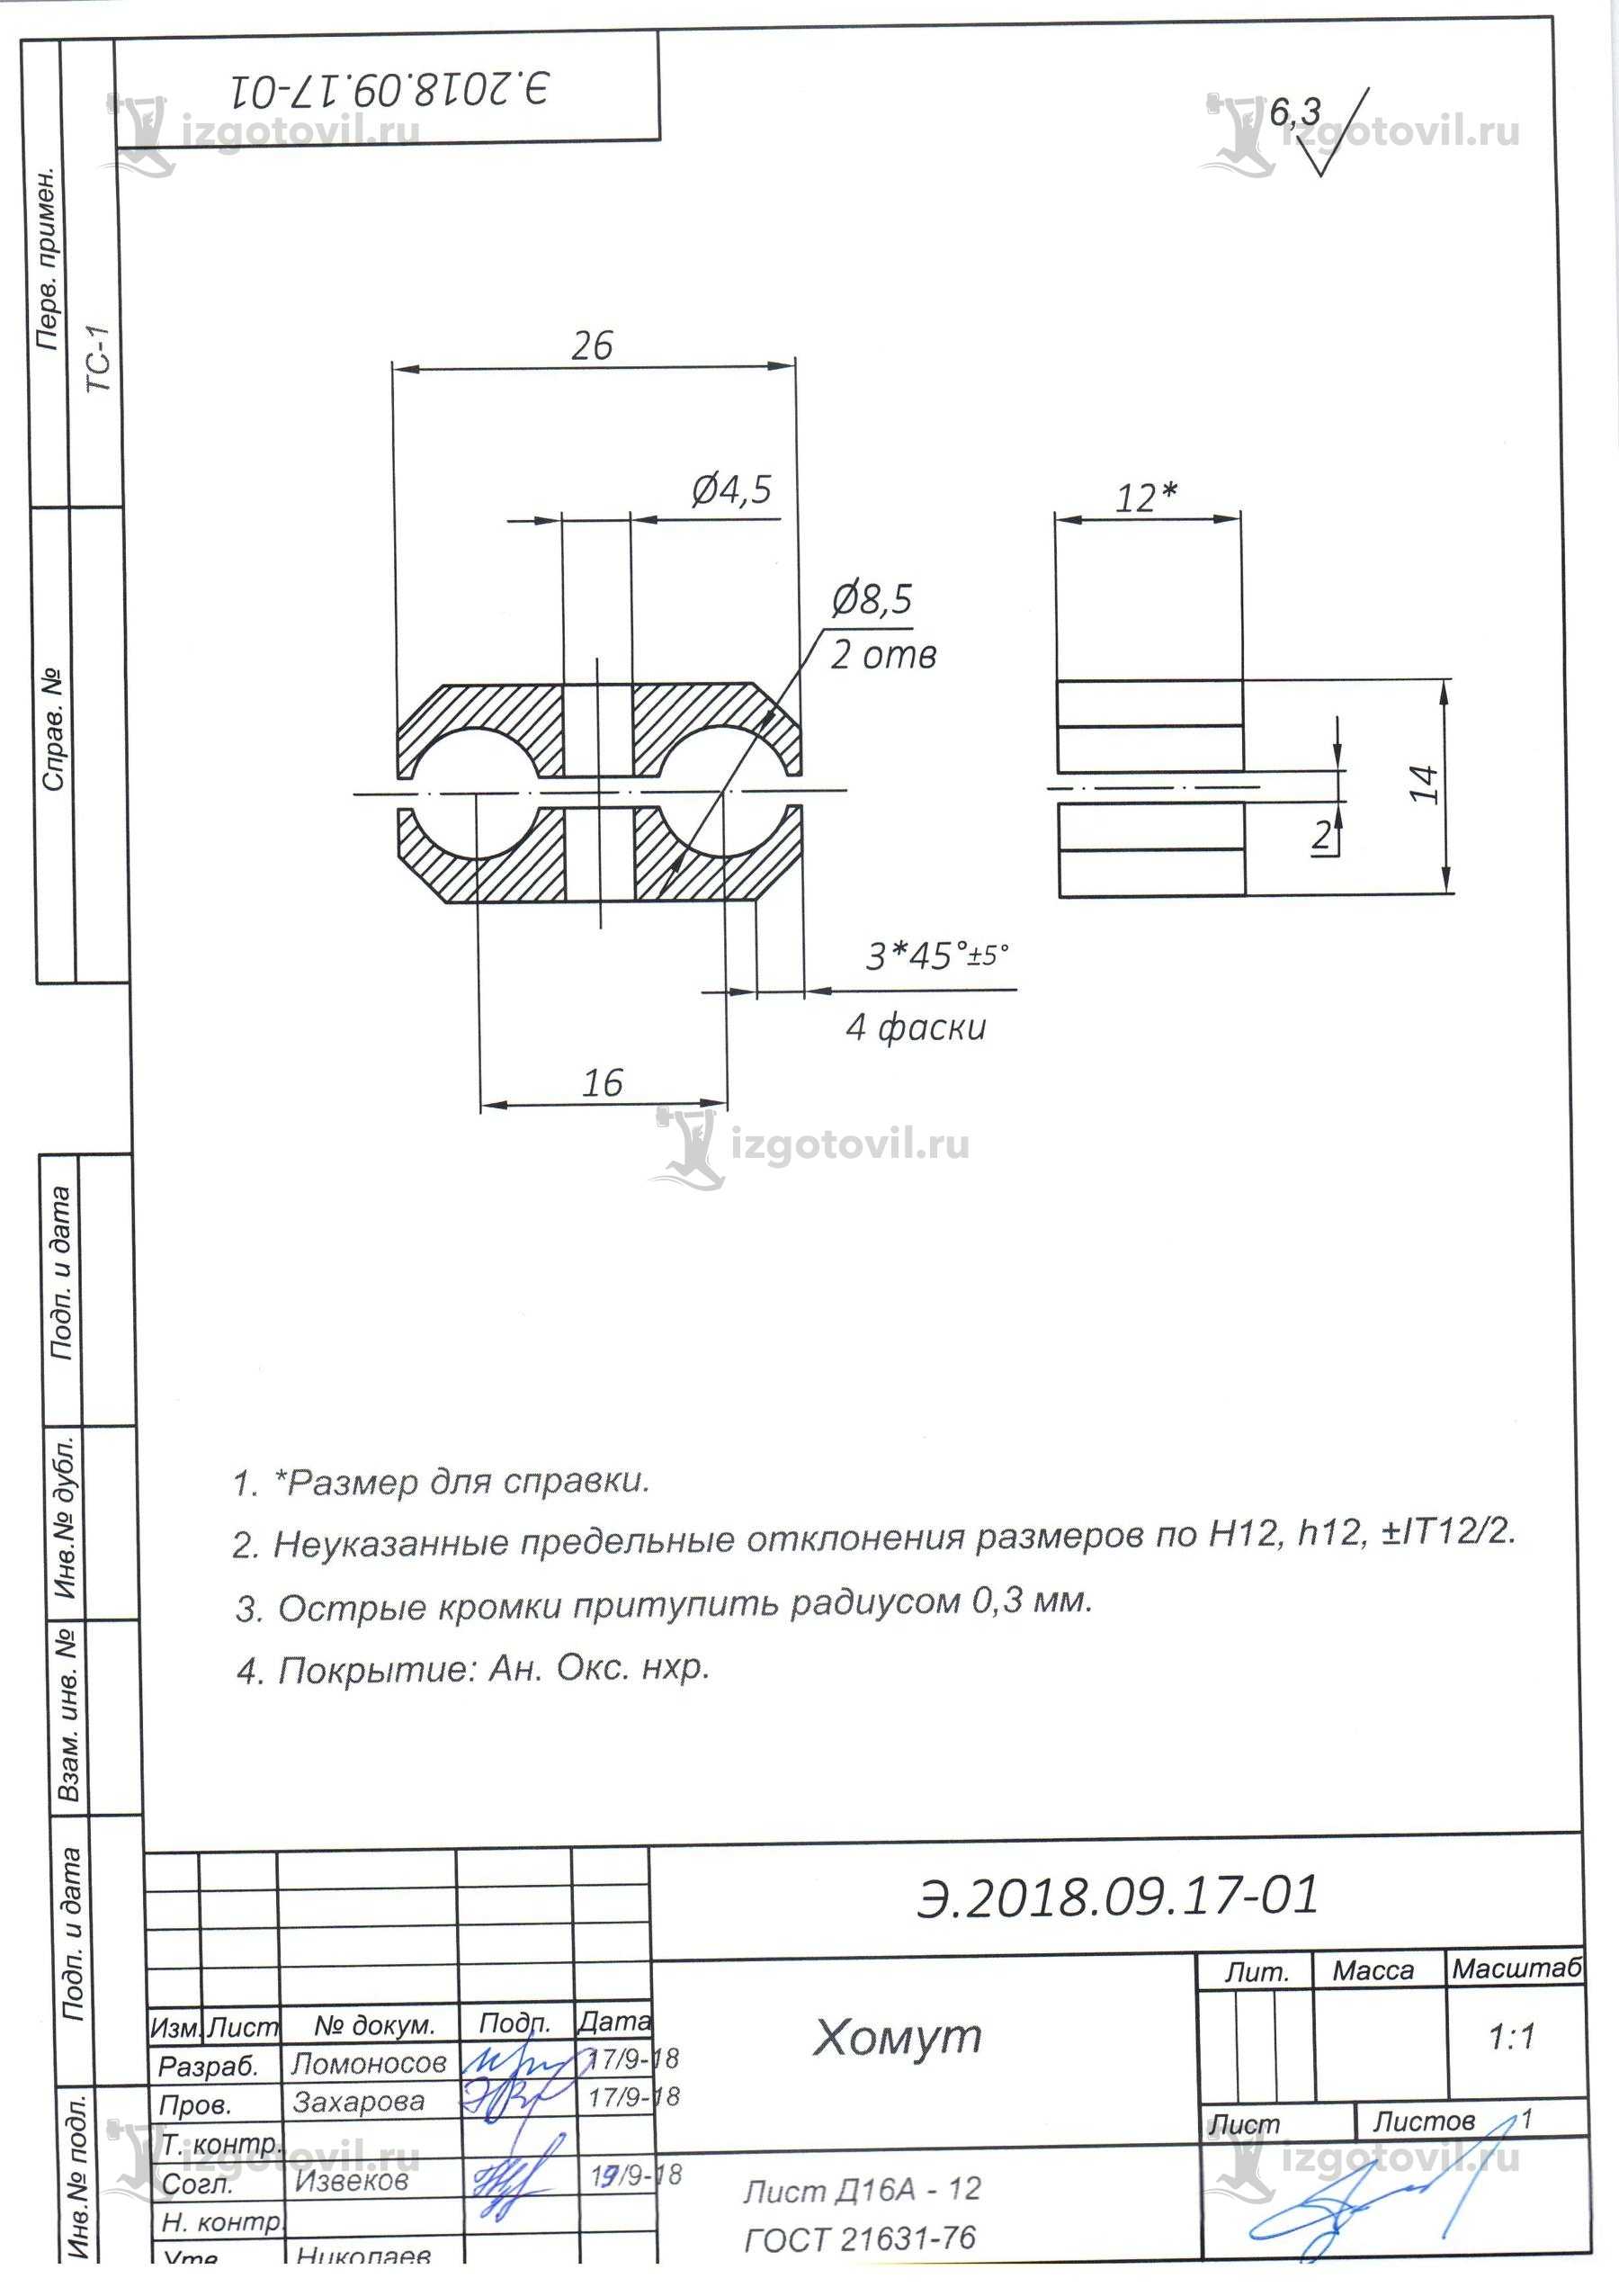 Изготовление деталей по чертежам (комплекта деталей прибора ТС-1).